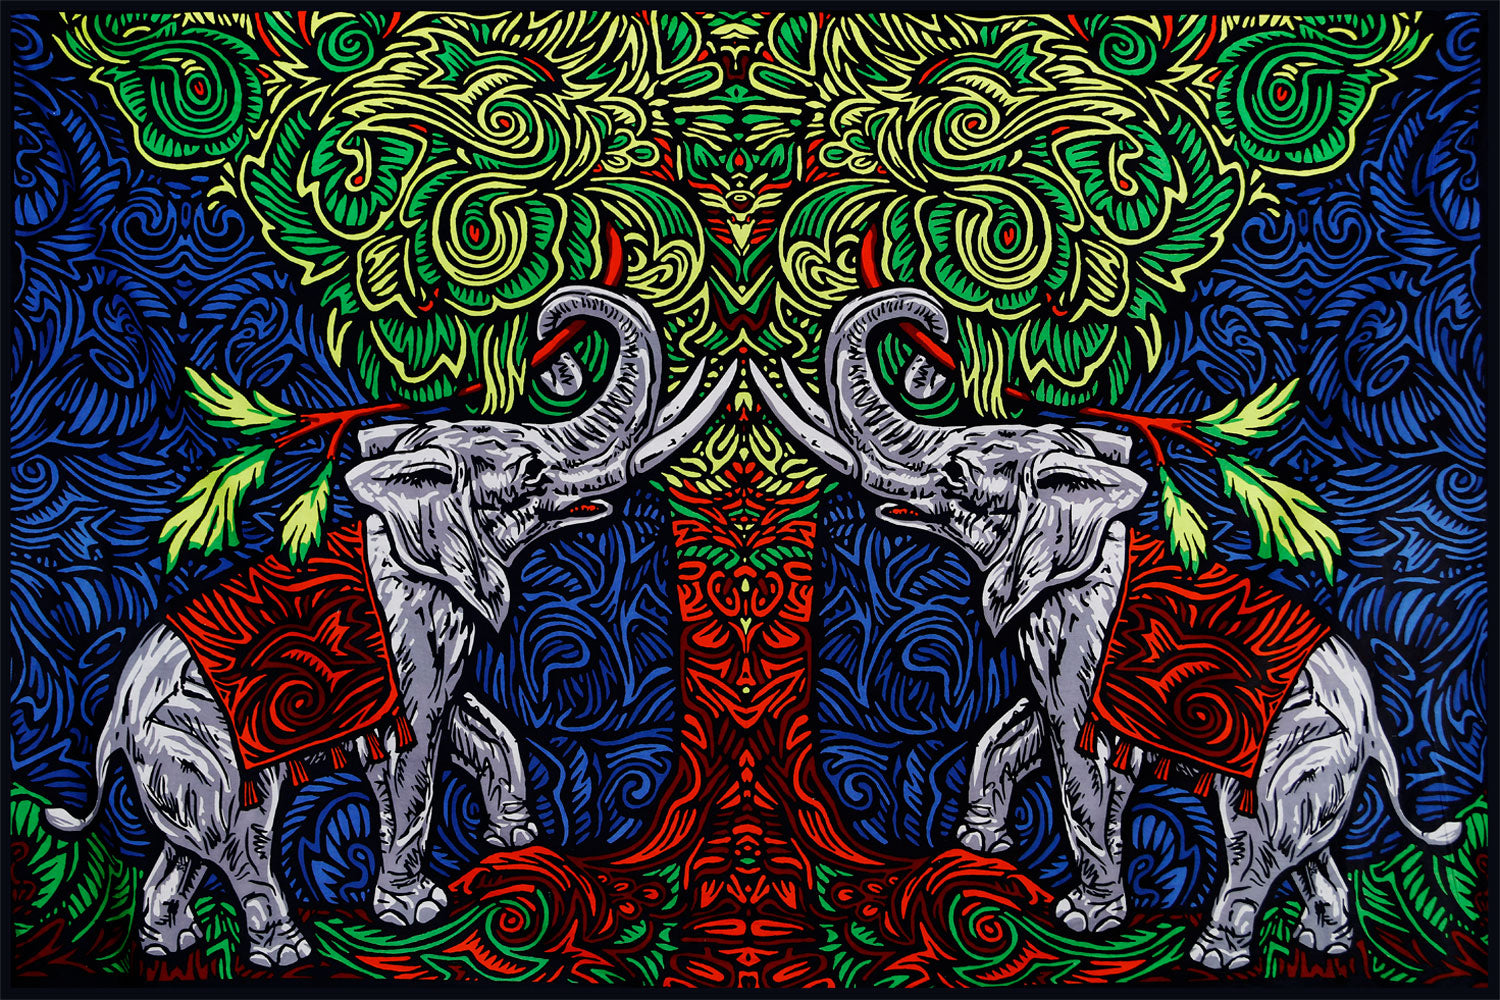 Elephant Tree Tapestry